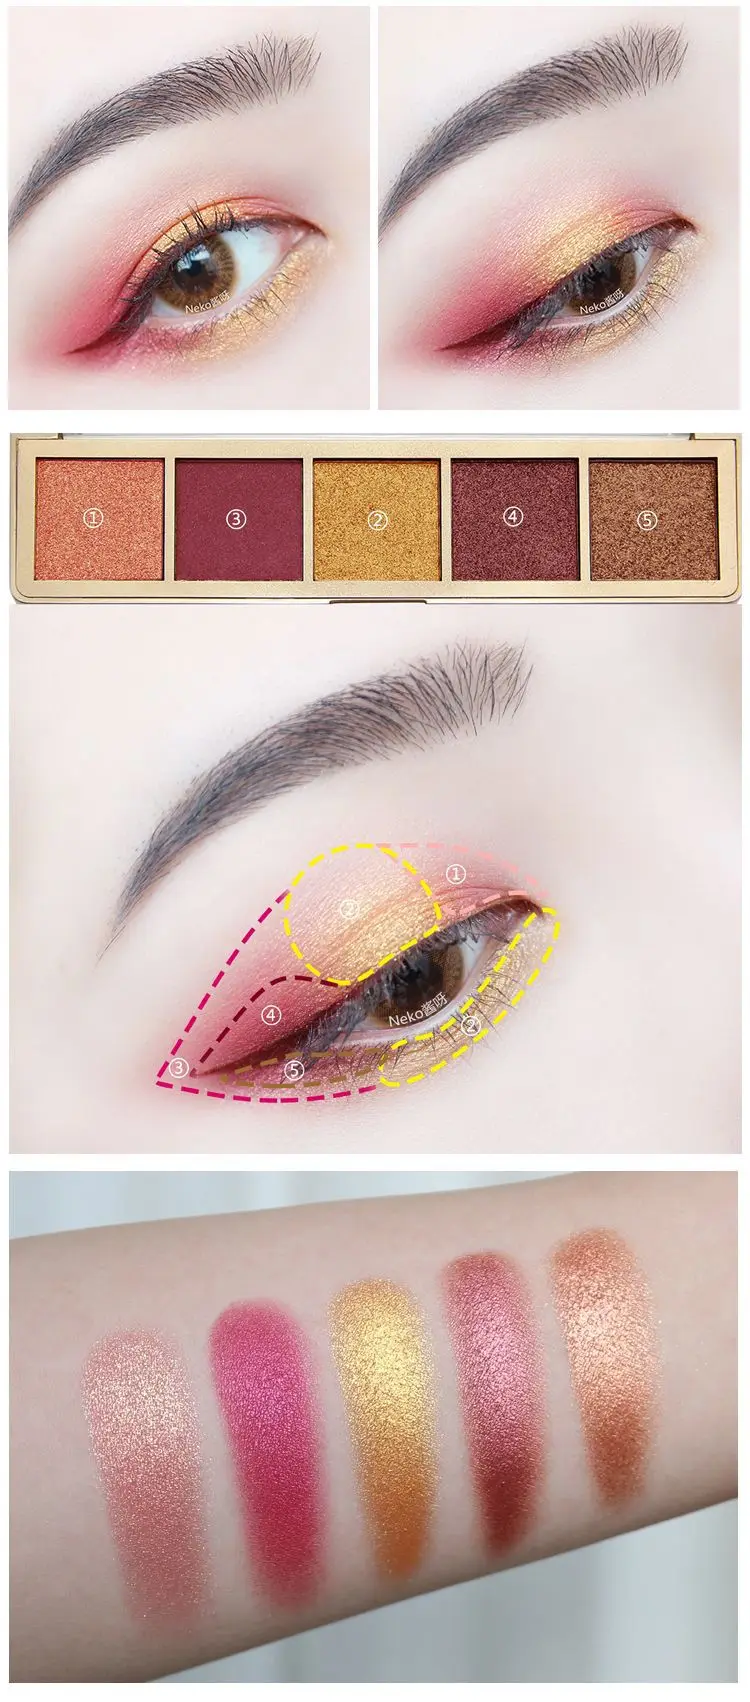 NOVO бренд 5 цветов жемчужные блестящие тени для век Пудра Палитра матовые тени для век макияж